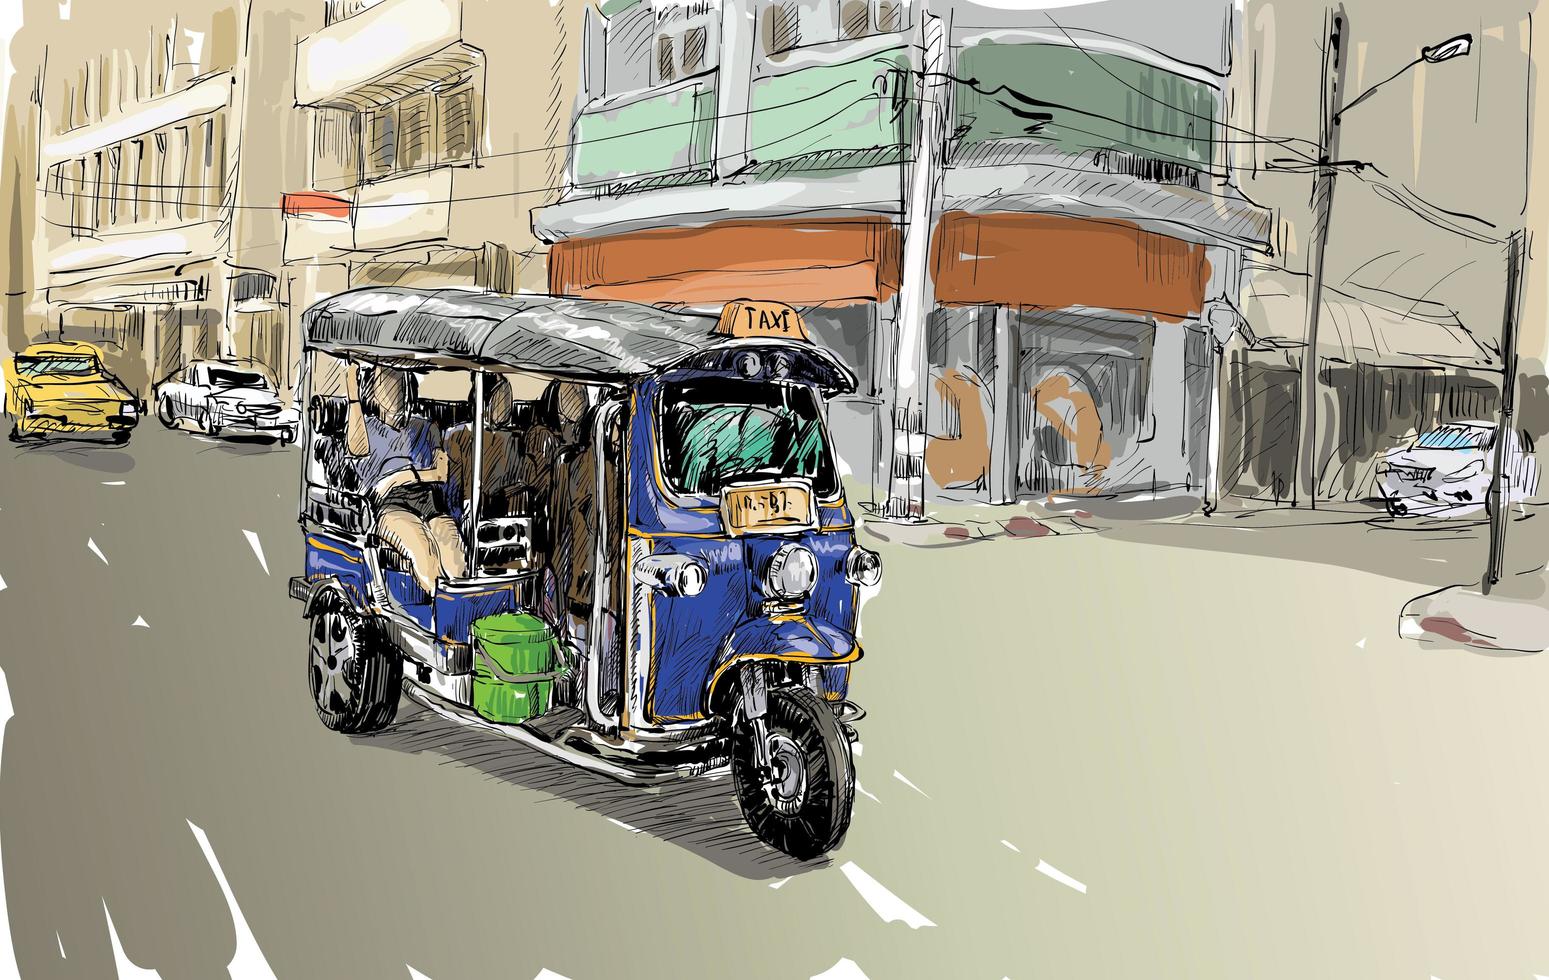 Boceto de un auto rickshaw en un fondo de la ciudad vector